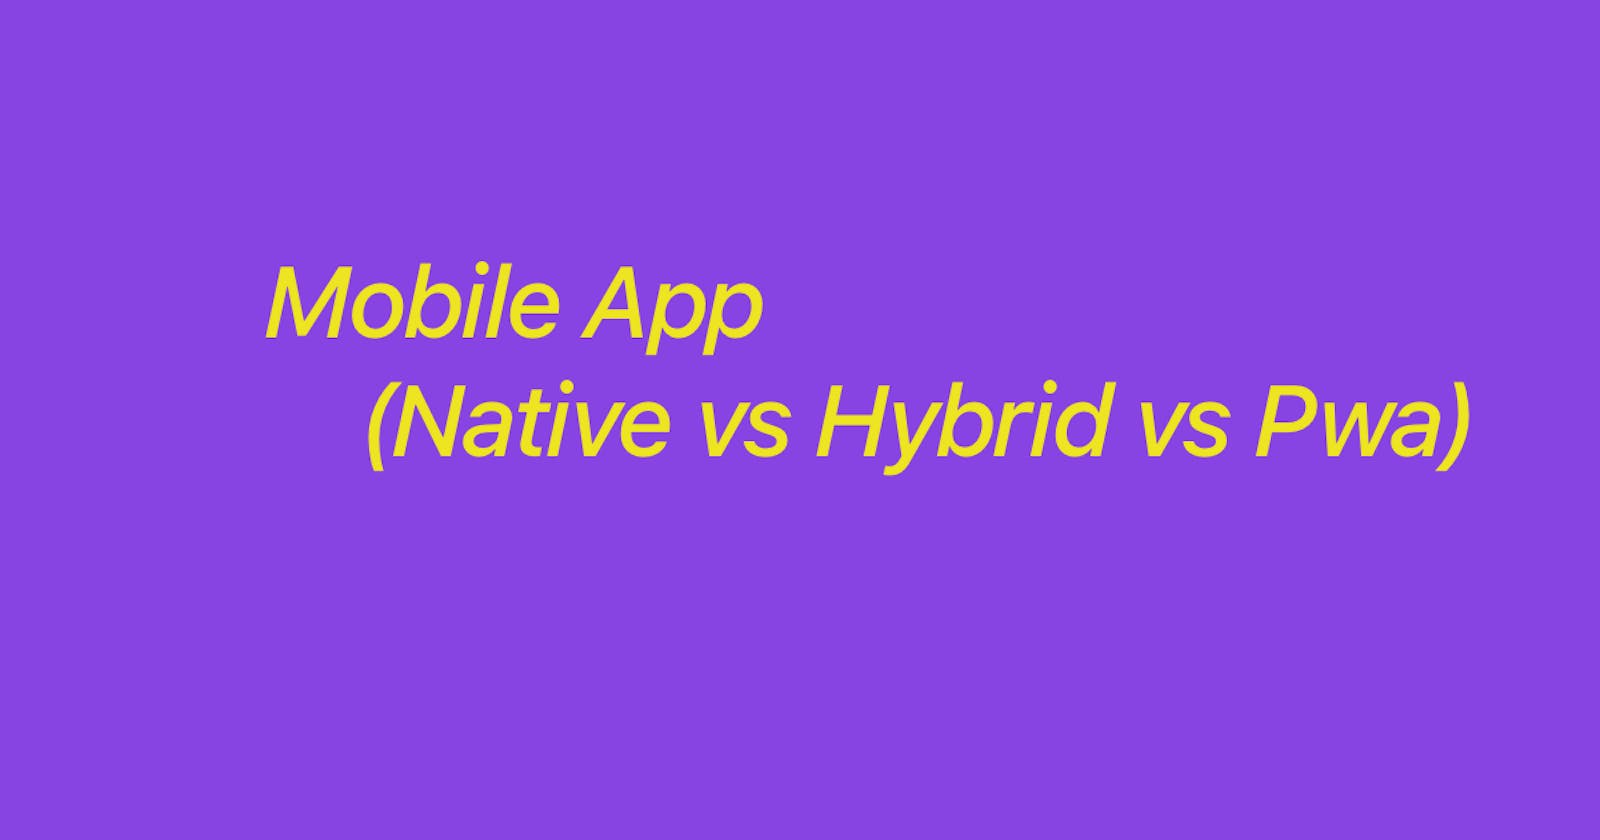 Mobile Applications [Native vs Hybrid vs Pwa]